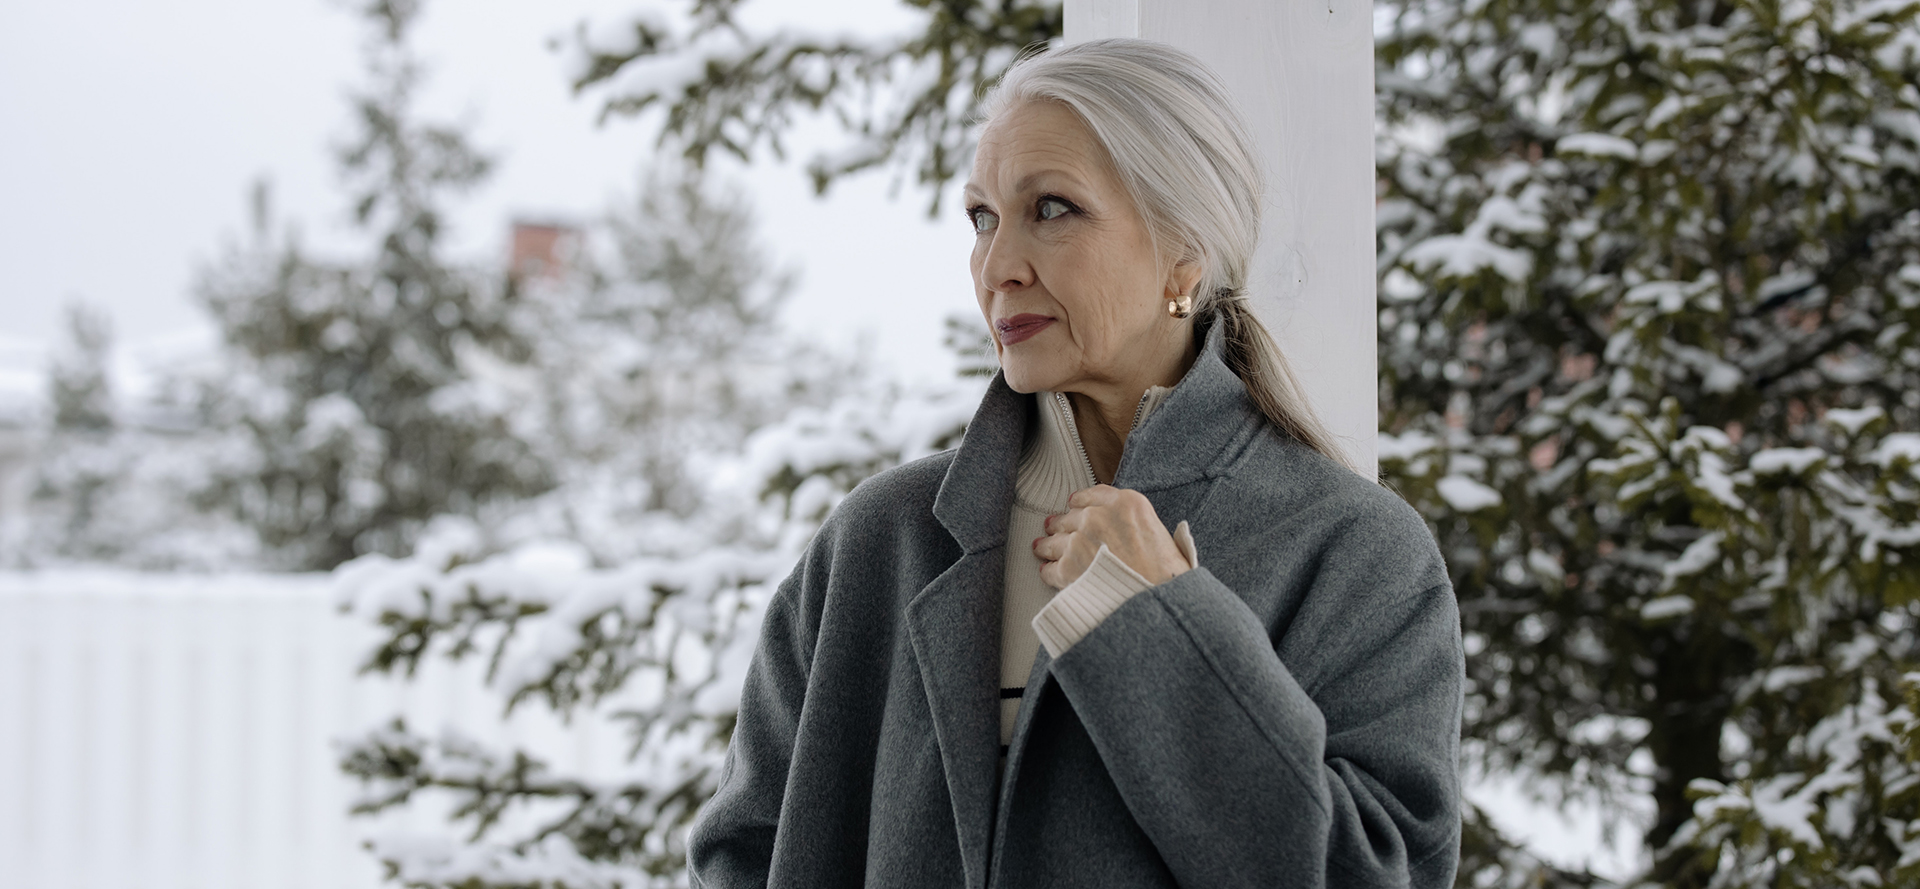 Babička v šedém kabátě před zimní scenérií.